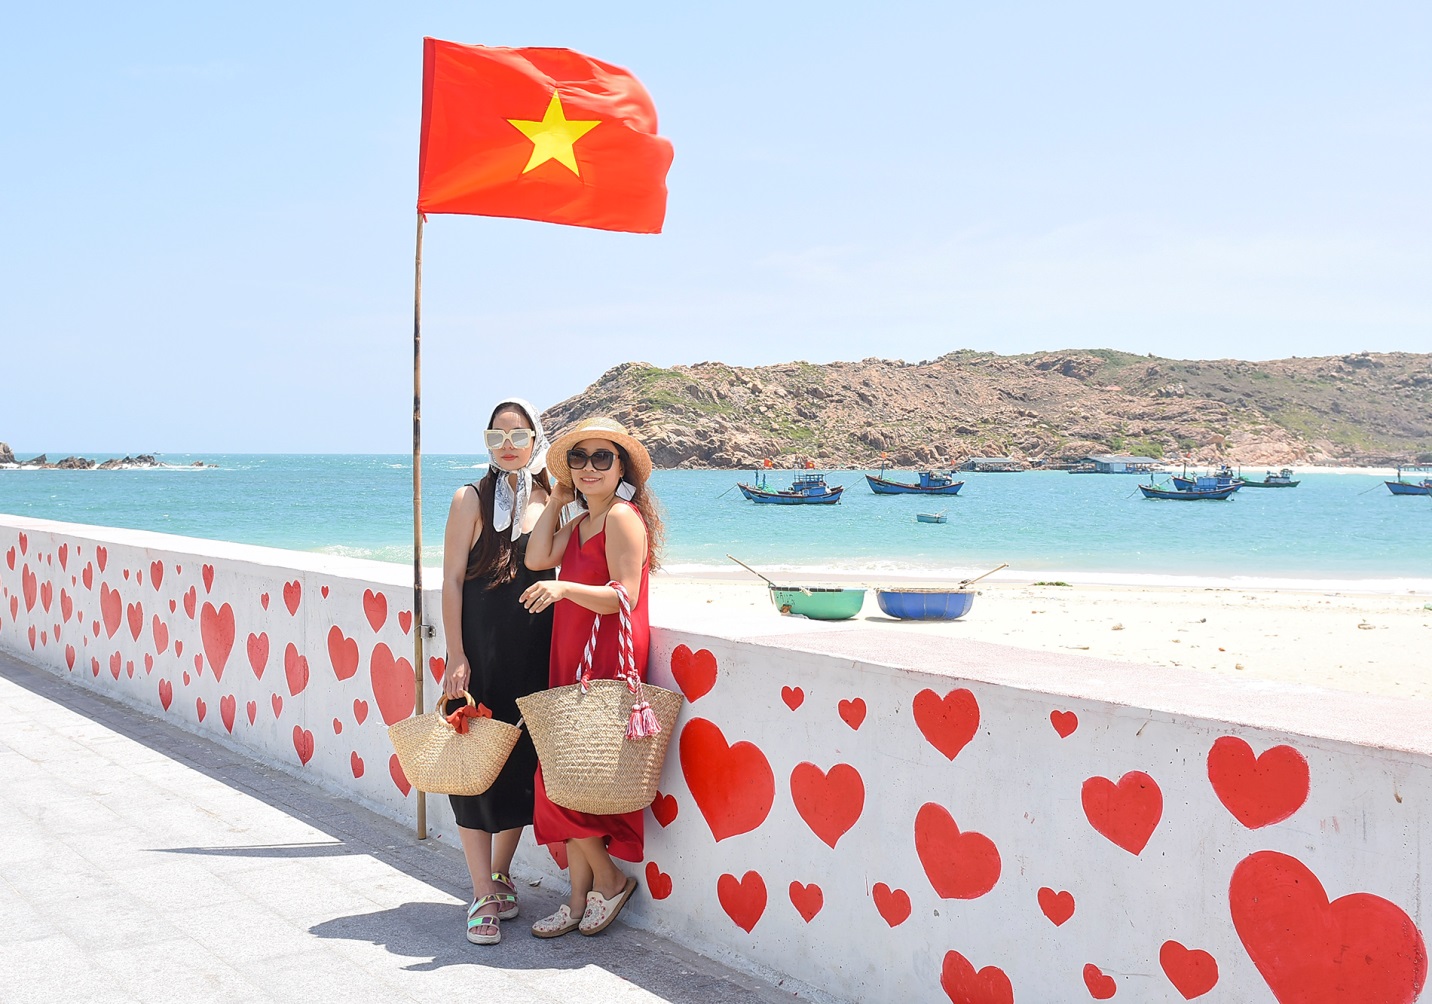 Eo biển thơ mộng quyến rũ du khách dọc bờ biển Bình Định - 6